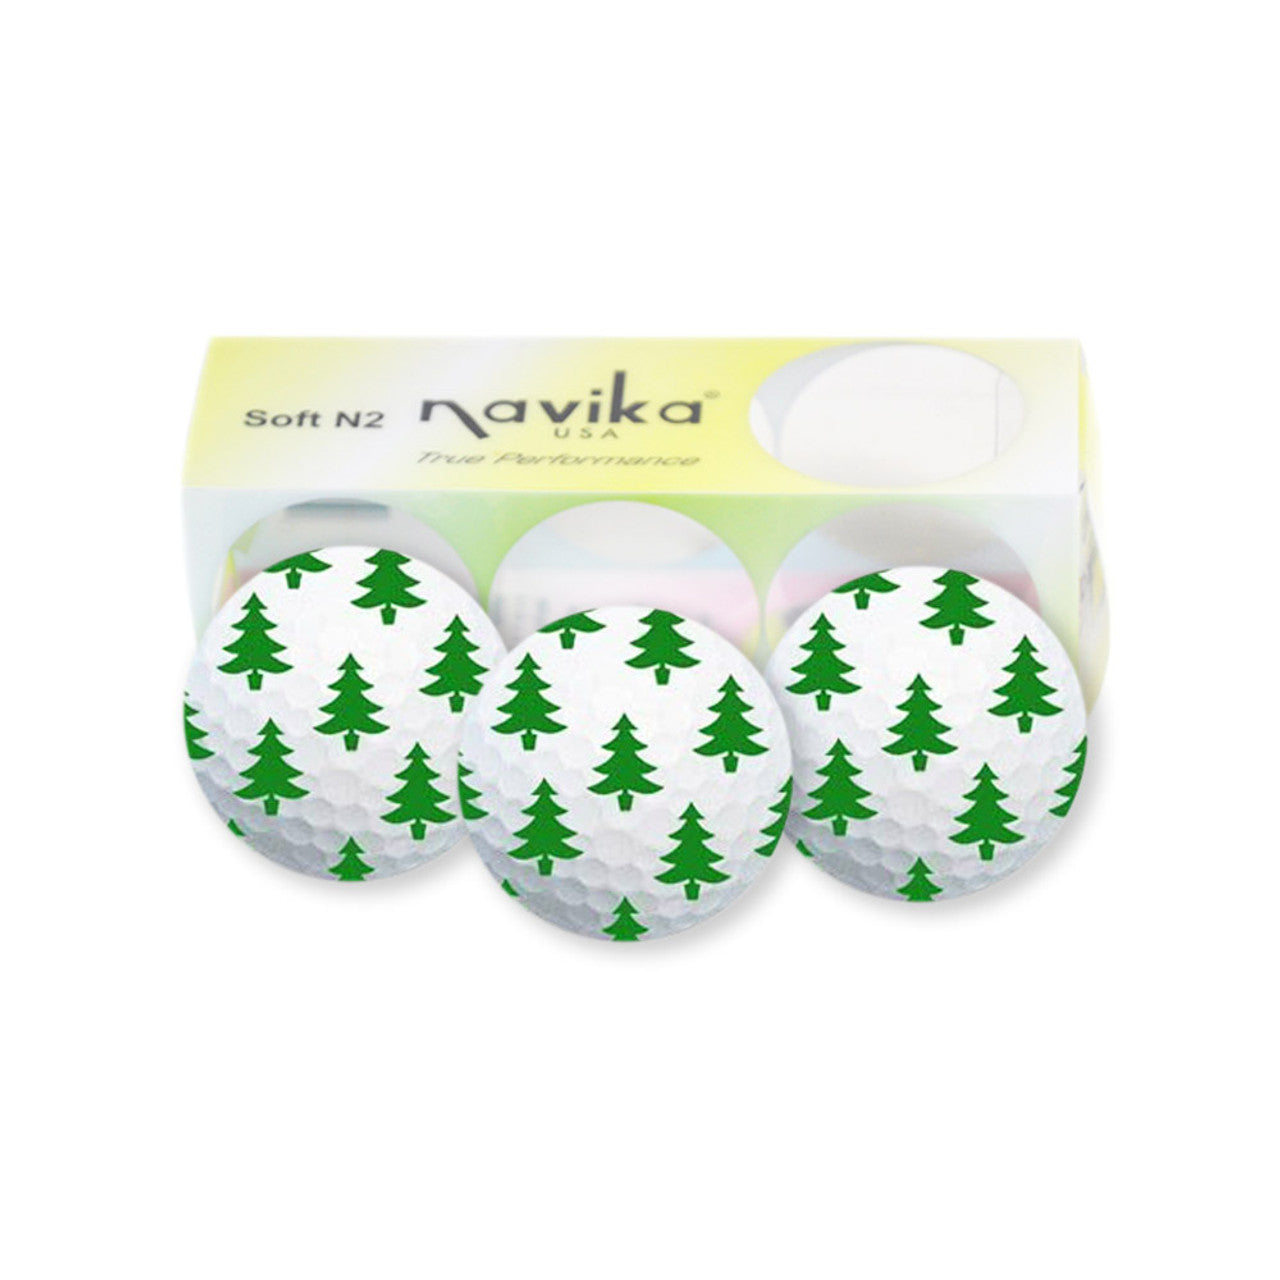 Navika- Christmas Tree Printed Golf Balls